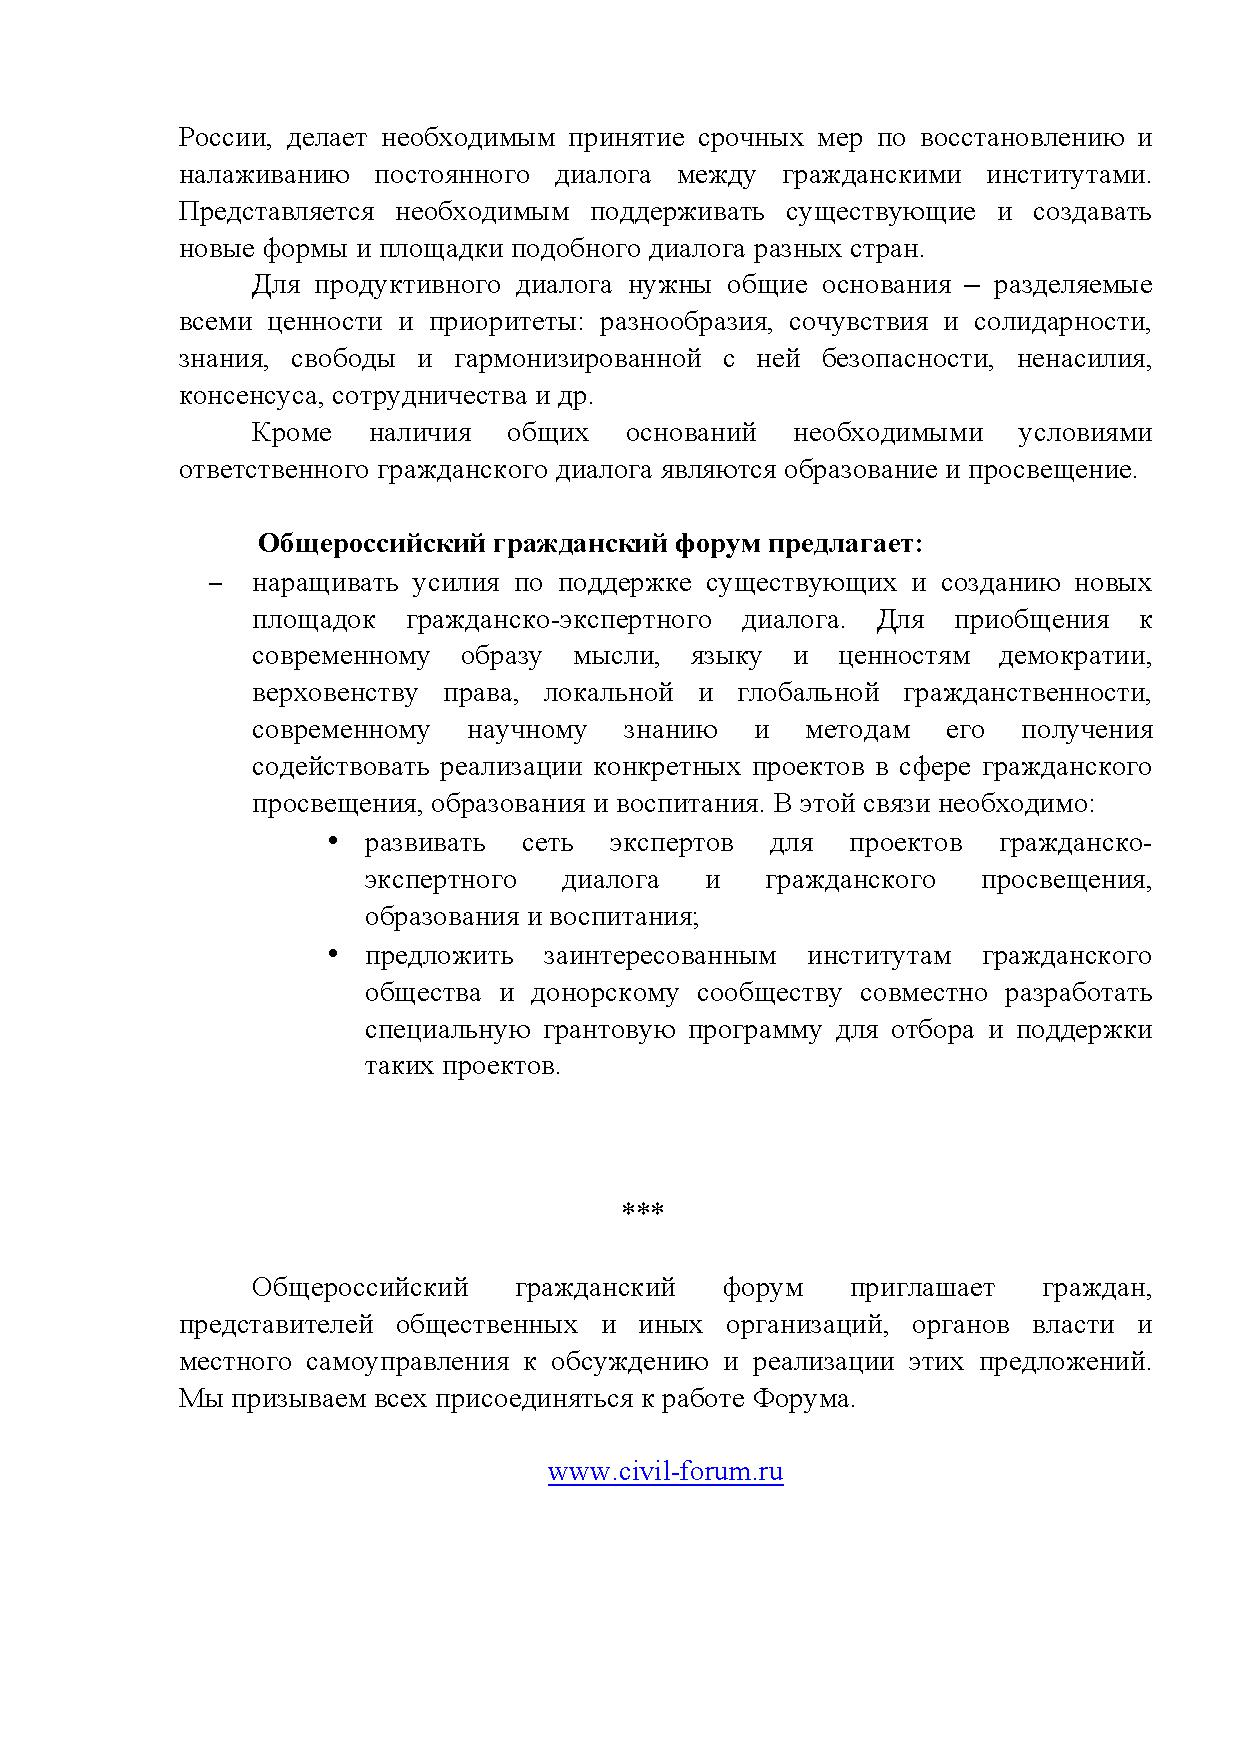  Опубликованы Предложения Общероссийского гражданского форума 2015 - фото 48